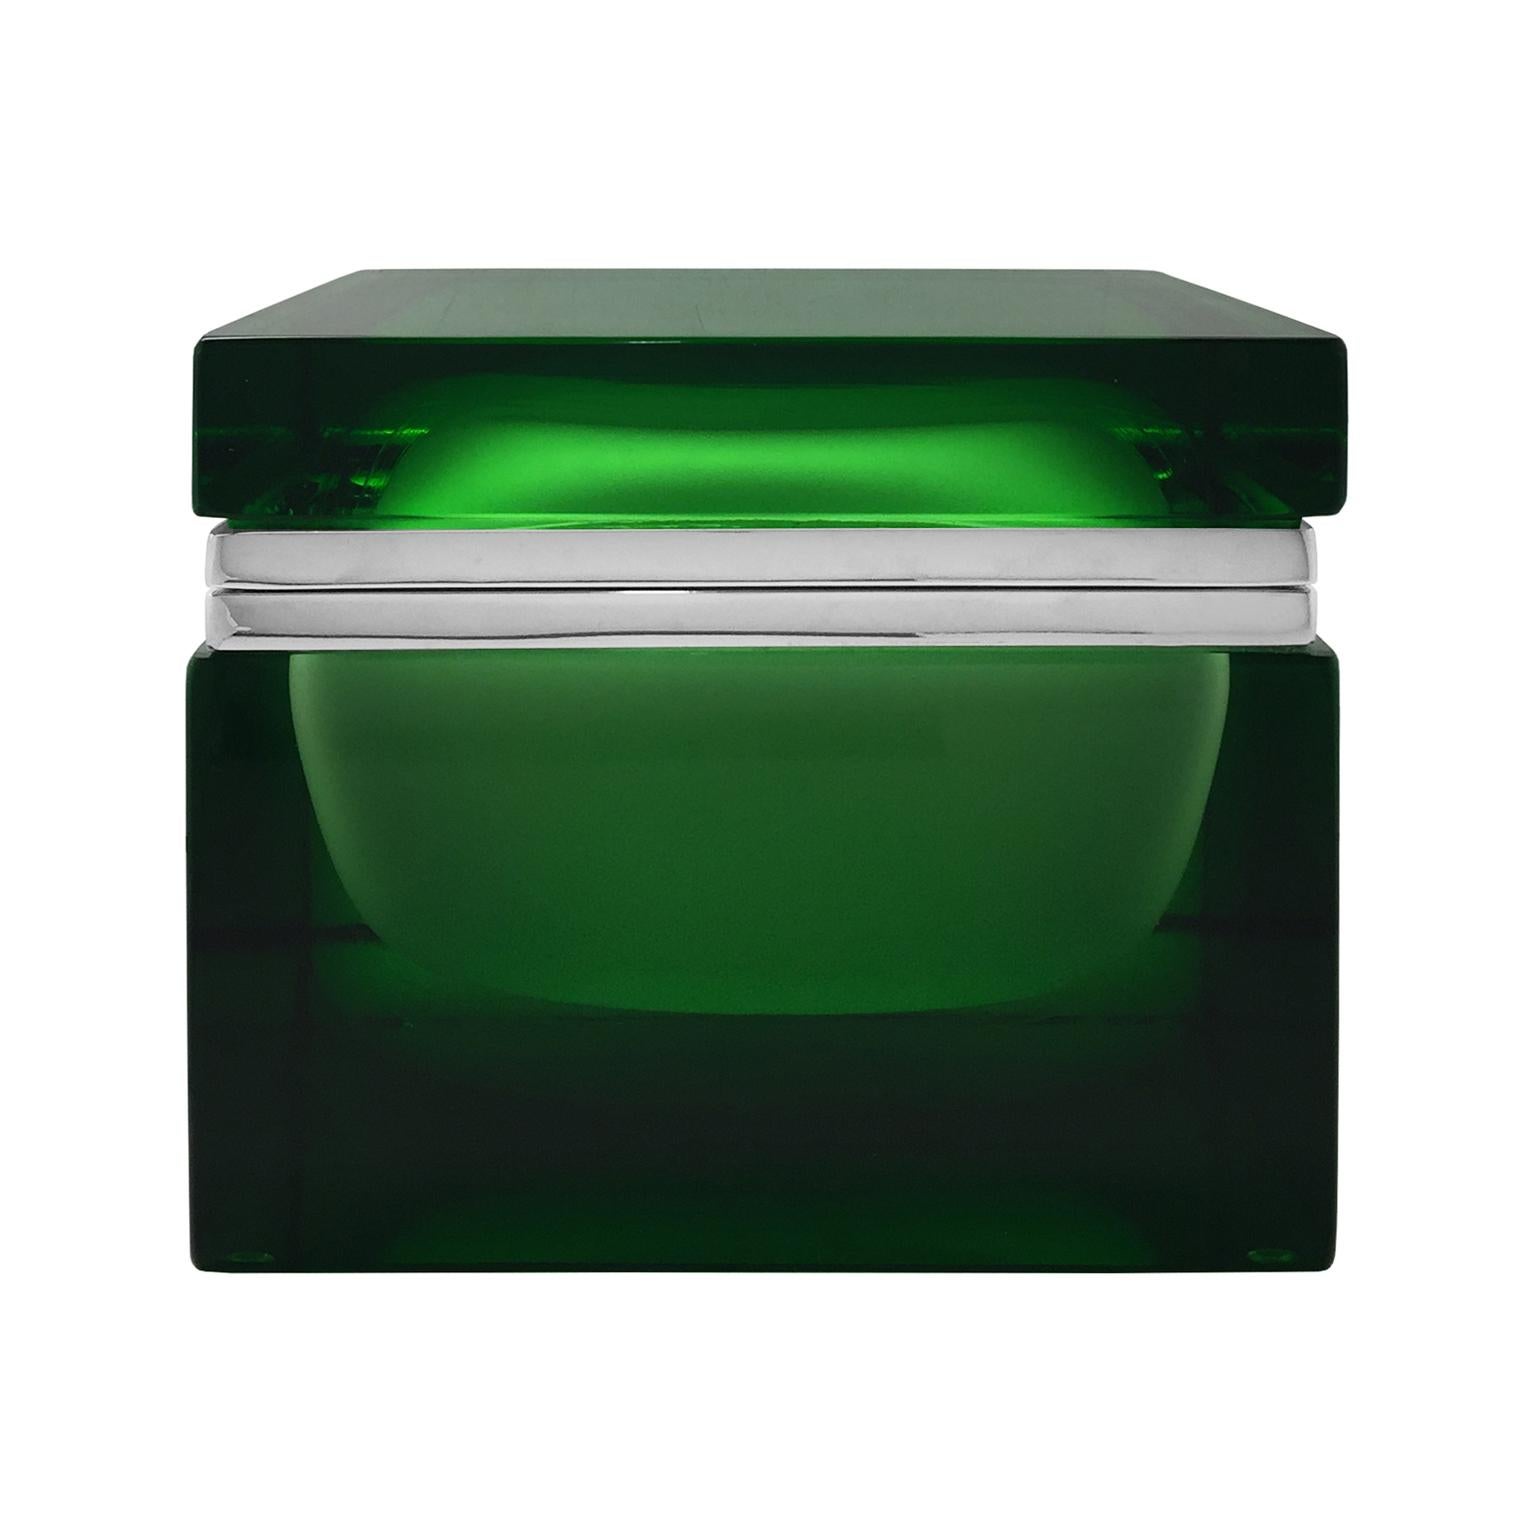 Handmade Giant Square Murano Glass Box in Green by Alessandro Mandruzzato